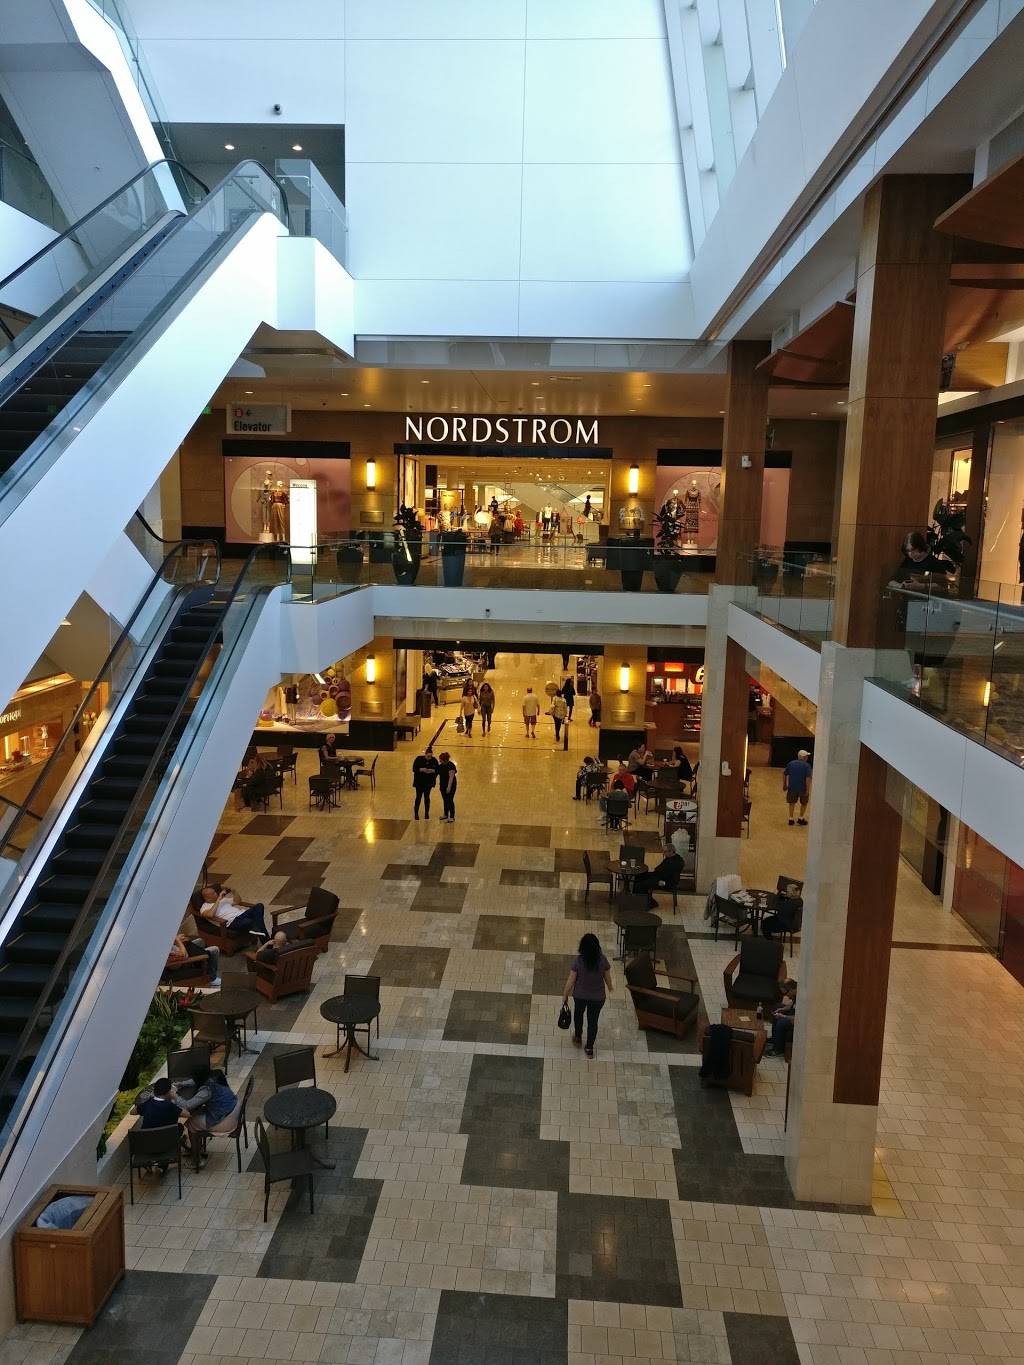 File:Westfield Topanga Mall - panoramio (3).jpg - Wikimedia Commons